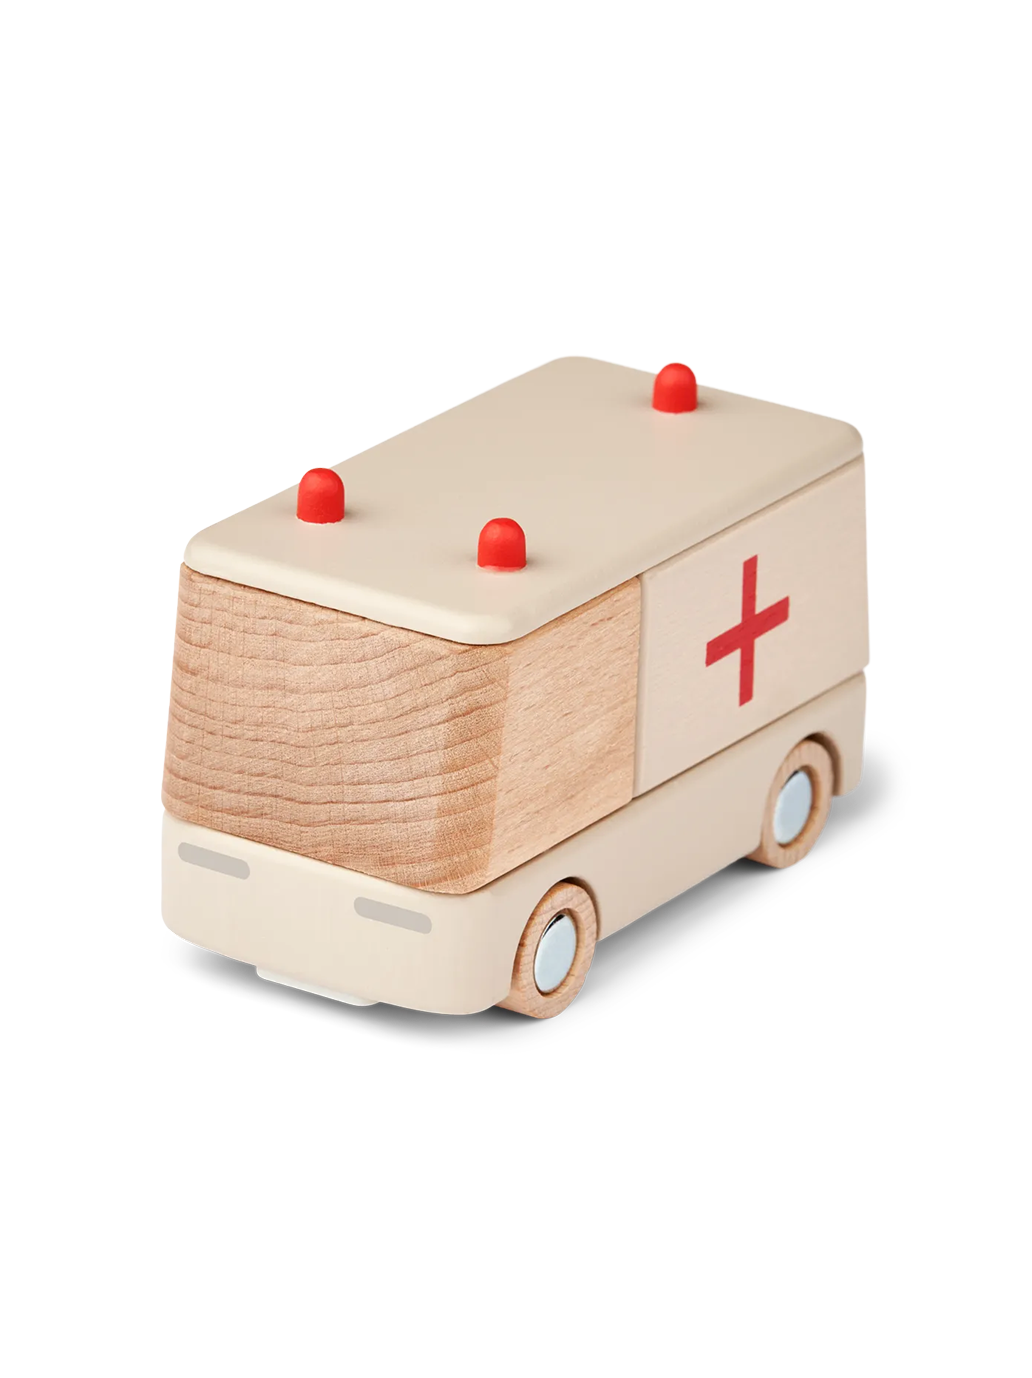 Village ambulance